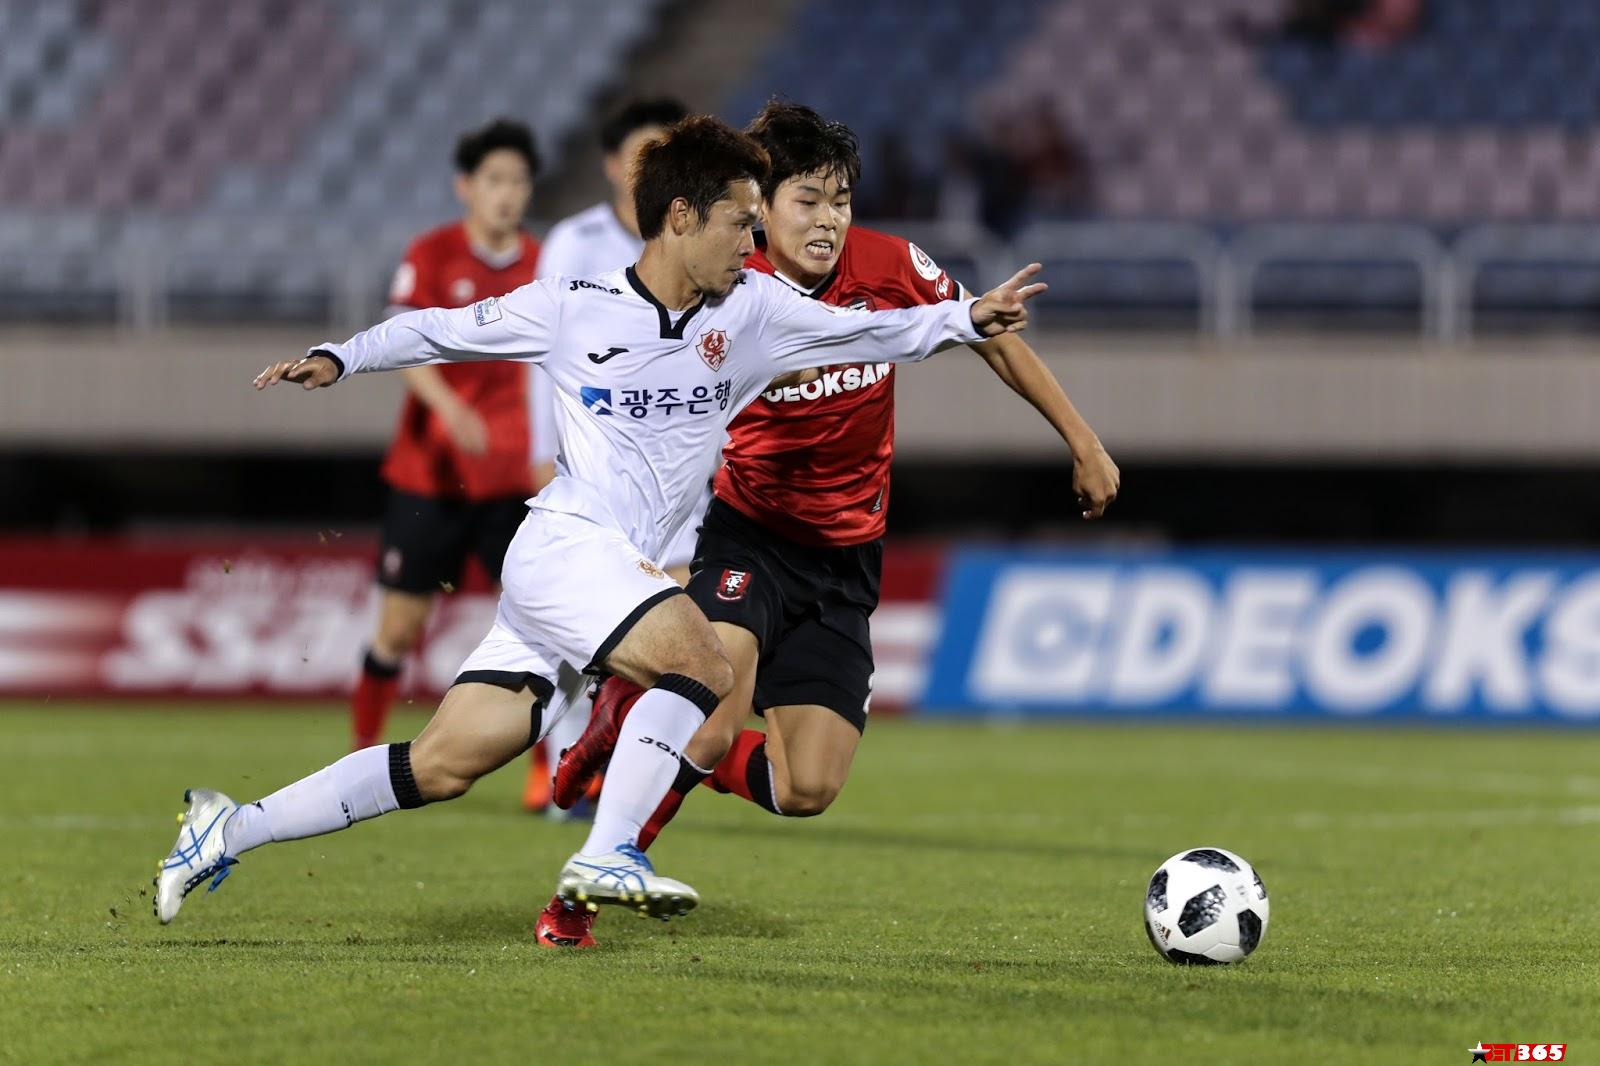 Nhận định kèo bóng đá: Seongnam vs FC Seoul – 17h00 10/03/2021